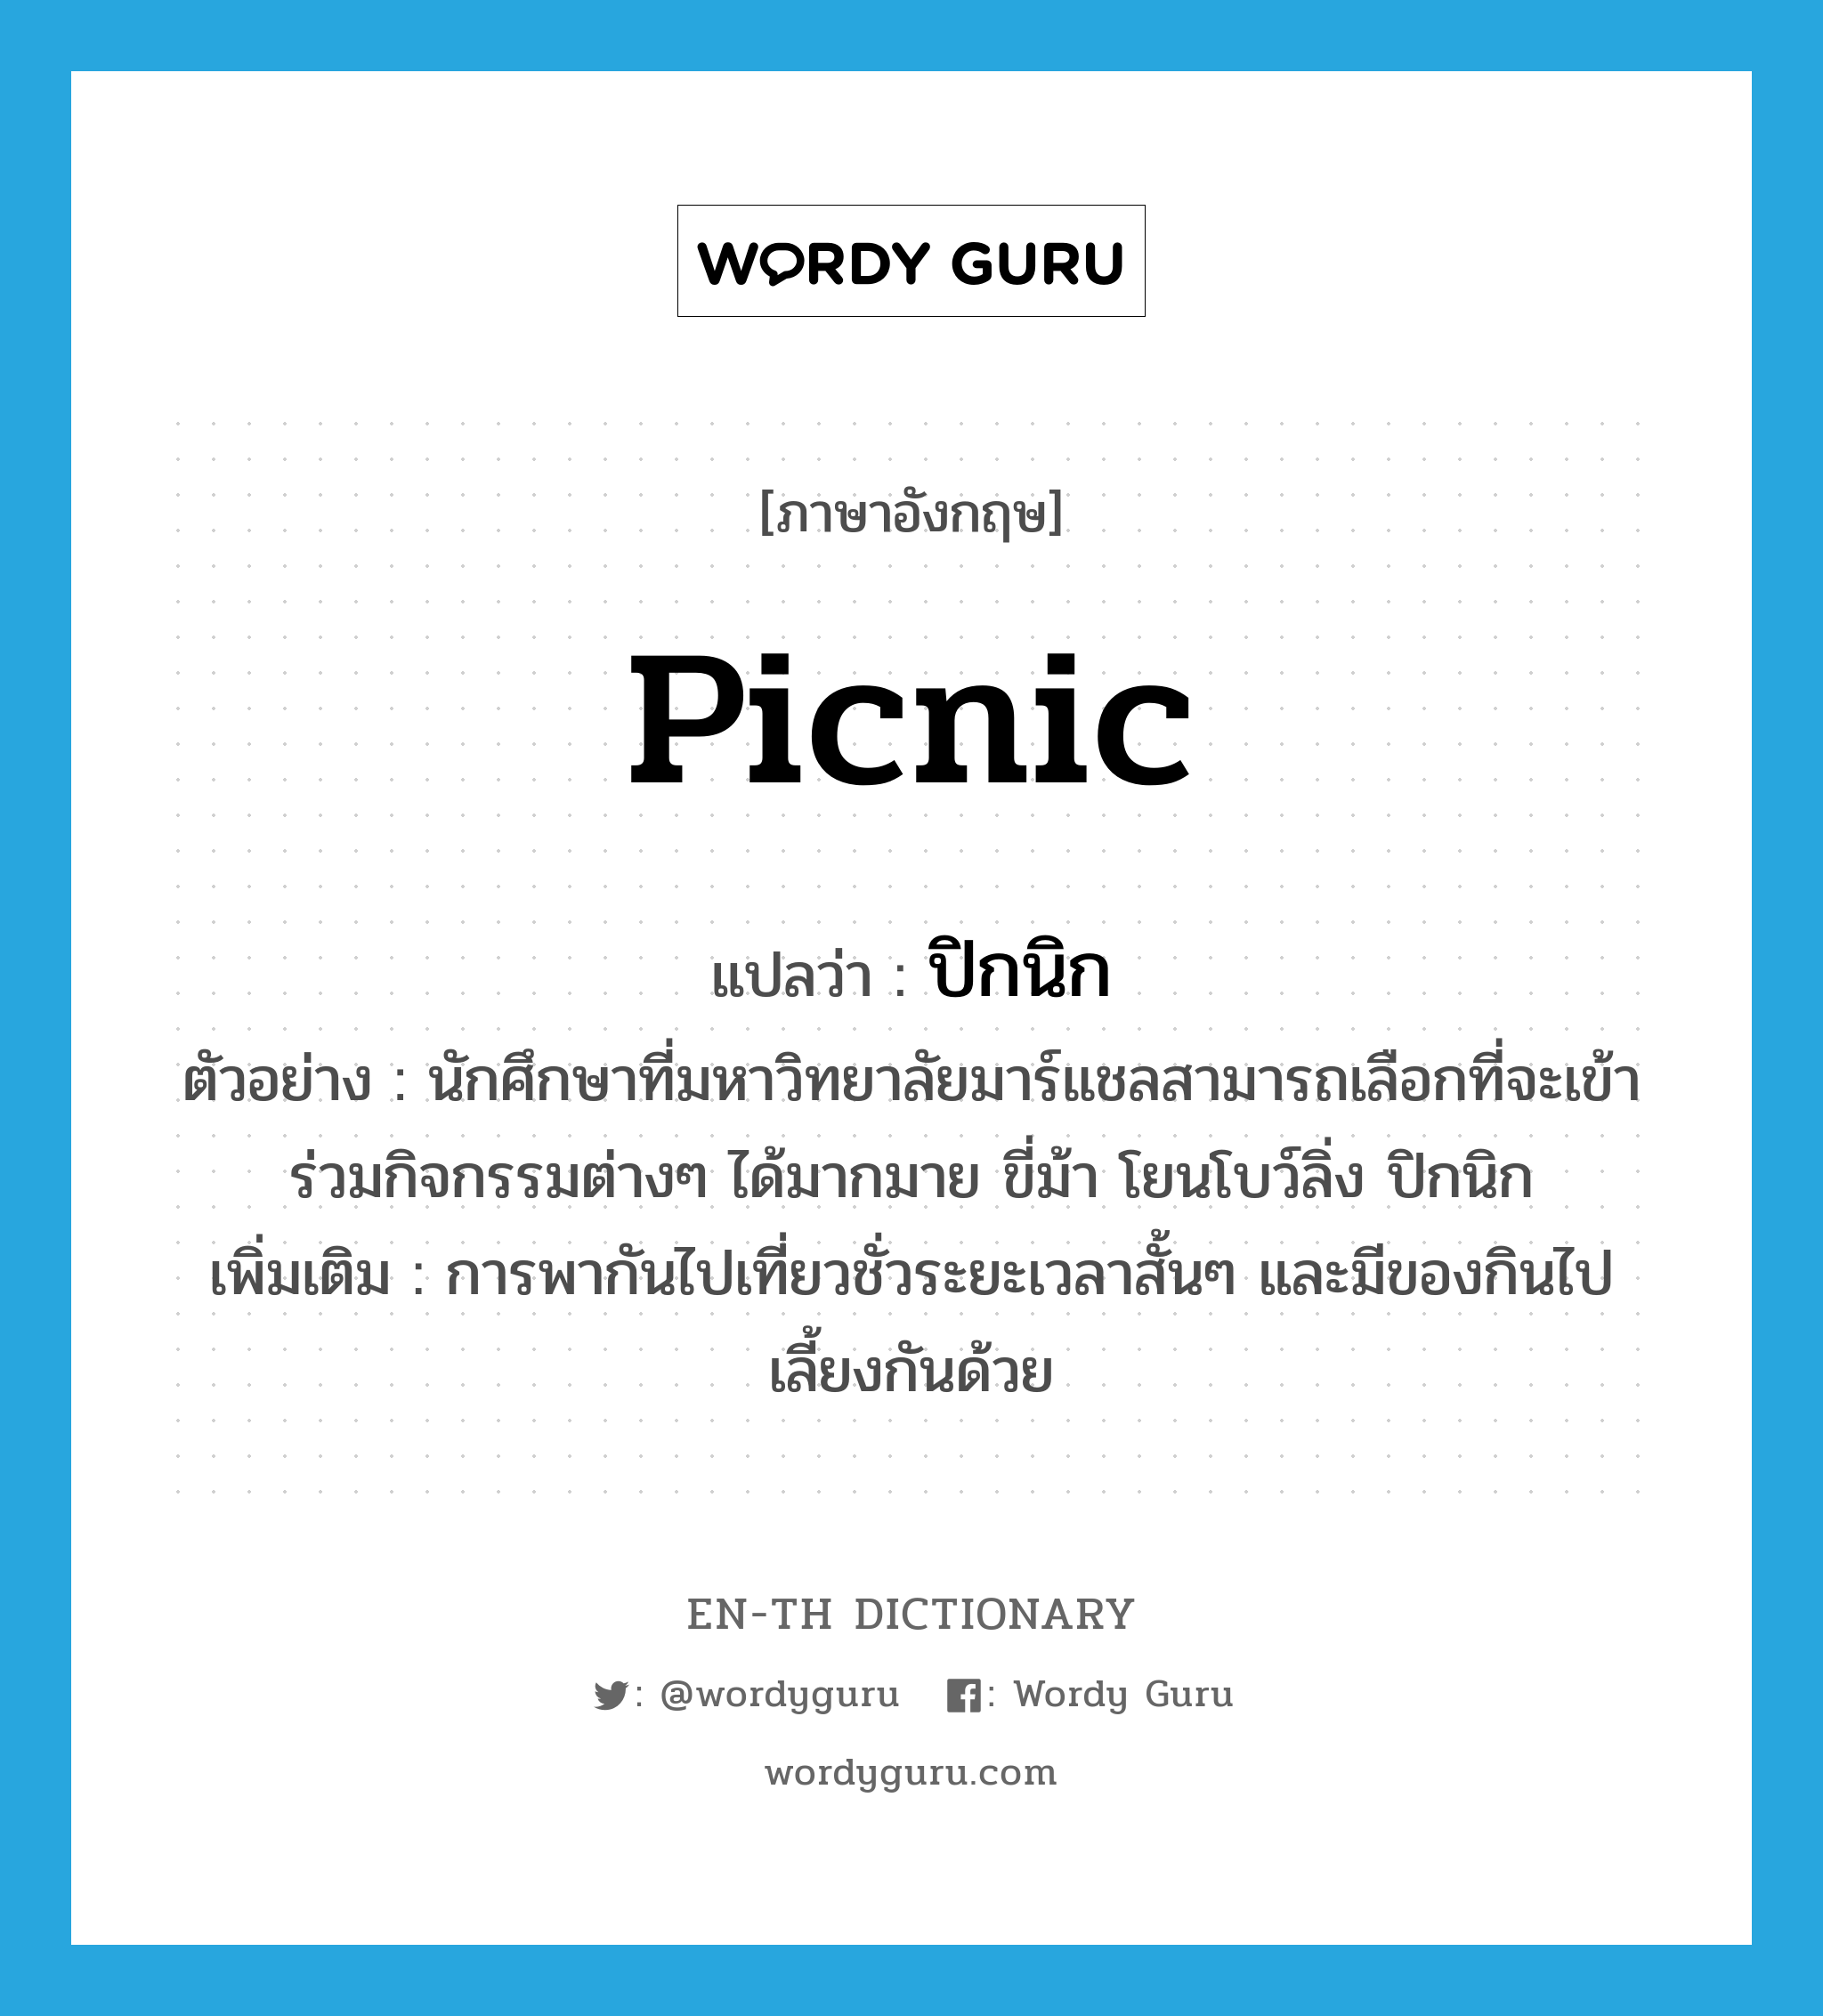 picnic แปลว่า?, คำศัพท์ภาษาอังกฤษ picnic แปลว่า ปิกนิก ประเภท N ตัวอย่าง นักศึกษาที่มหาวิทยาลัยมาร์แชลสามารถเลือกที่จะเข้าร่วมกิจกรรมต่างๆ ได้มากมาย ขี่ม้า โยนโบว์ลิ่ง ปิกนิก เพิ่มเติม การพากันไปเที่ยวชั่วระยะเวลาสั้นๆ และมีของกินไปเลี้ยงกันด้วย หมวด N